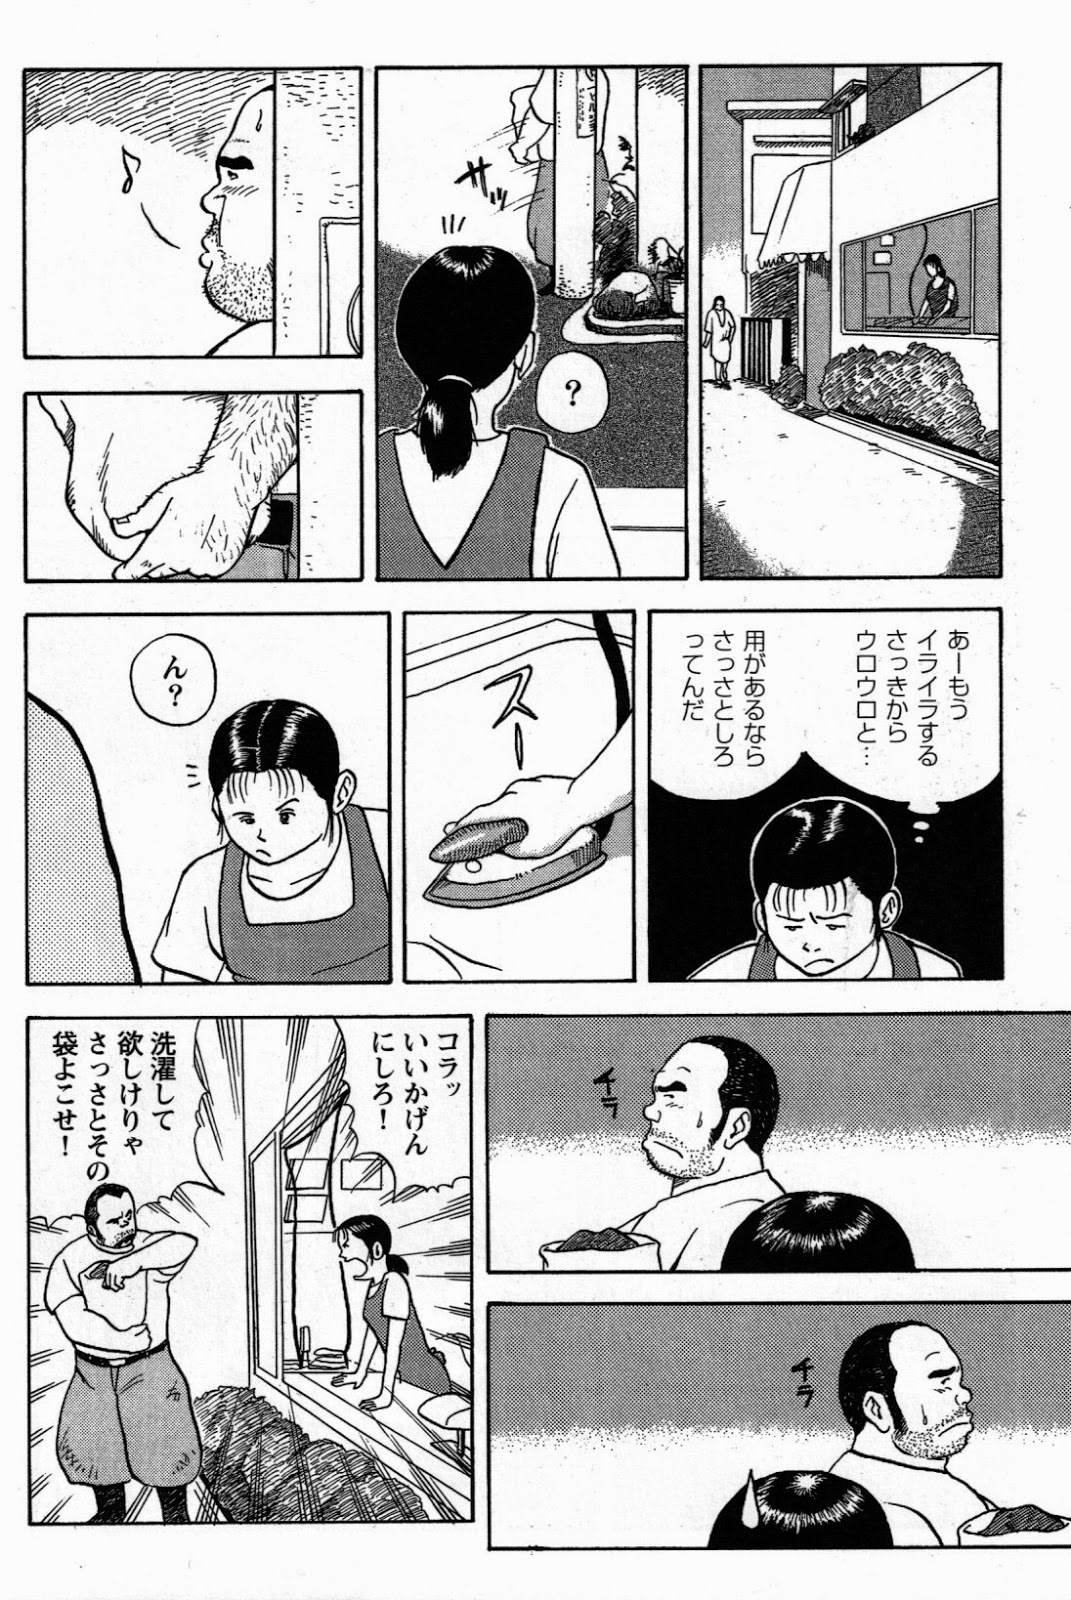 [Tatsumi Daigo, Yoshihiko Takeo] Sentakuya Bugi (GBless Vol.04) page 6 full